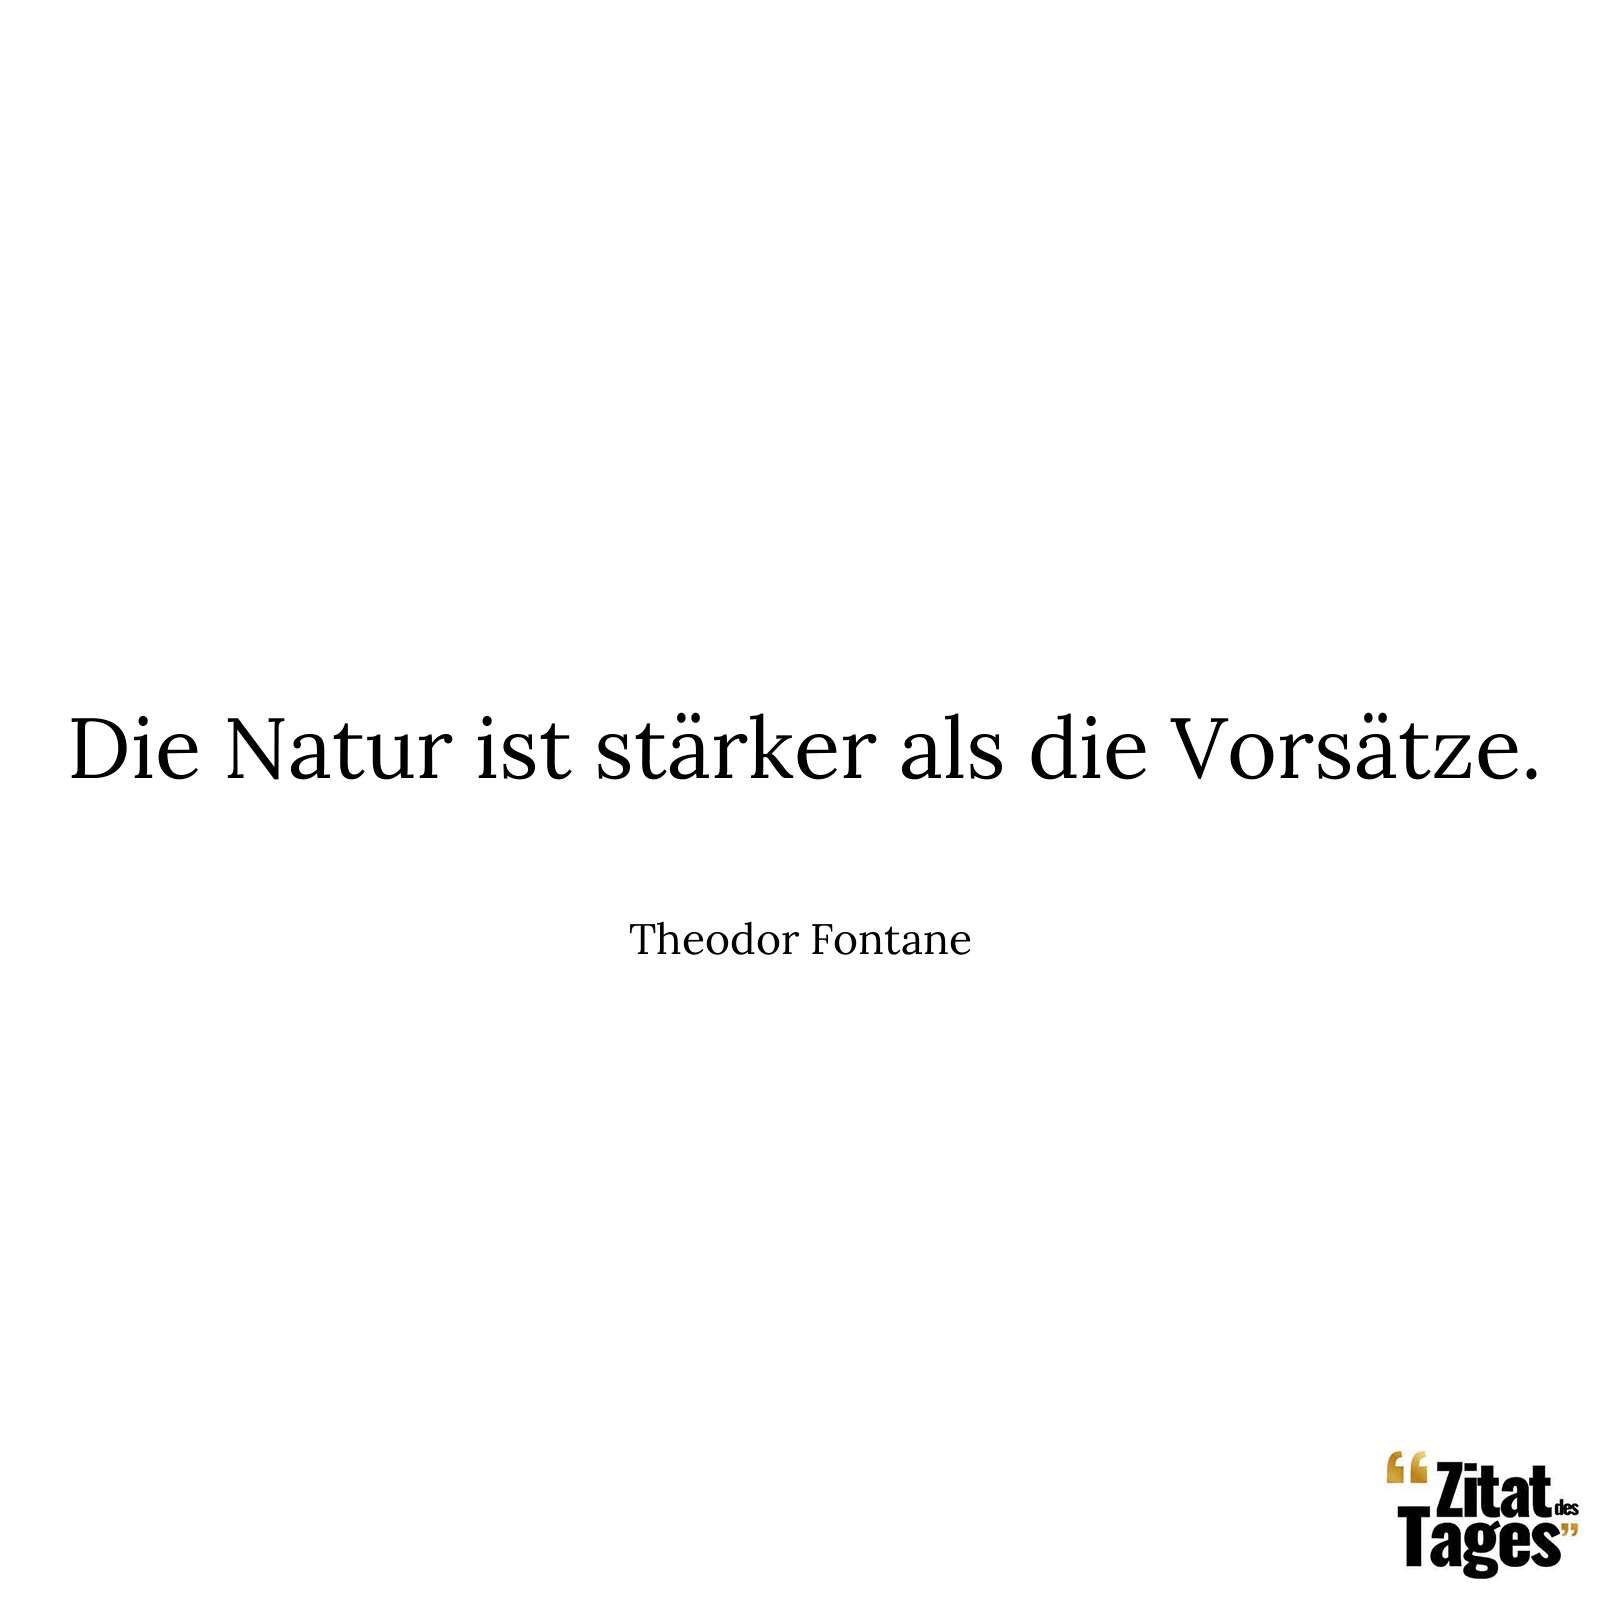 Die Natur ist stärker als die Vorsätze. - Theodor Fontane